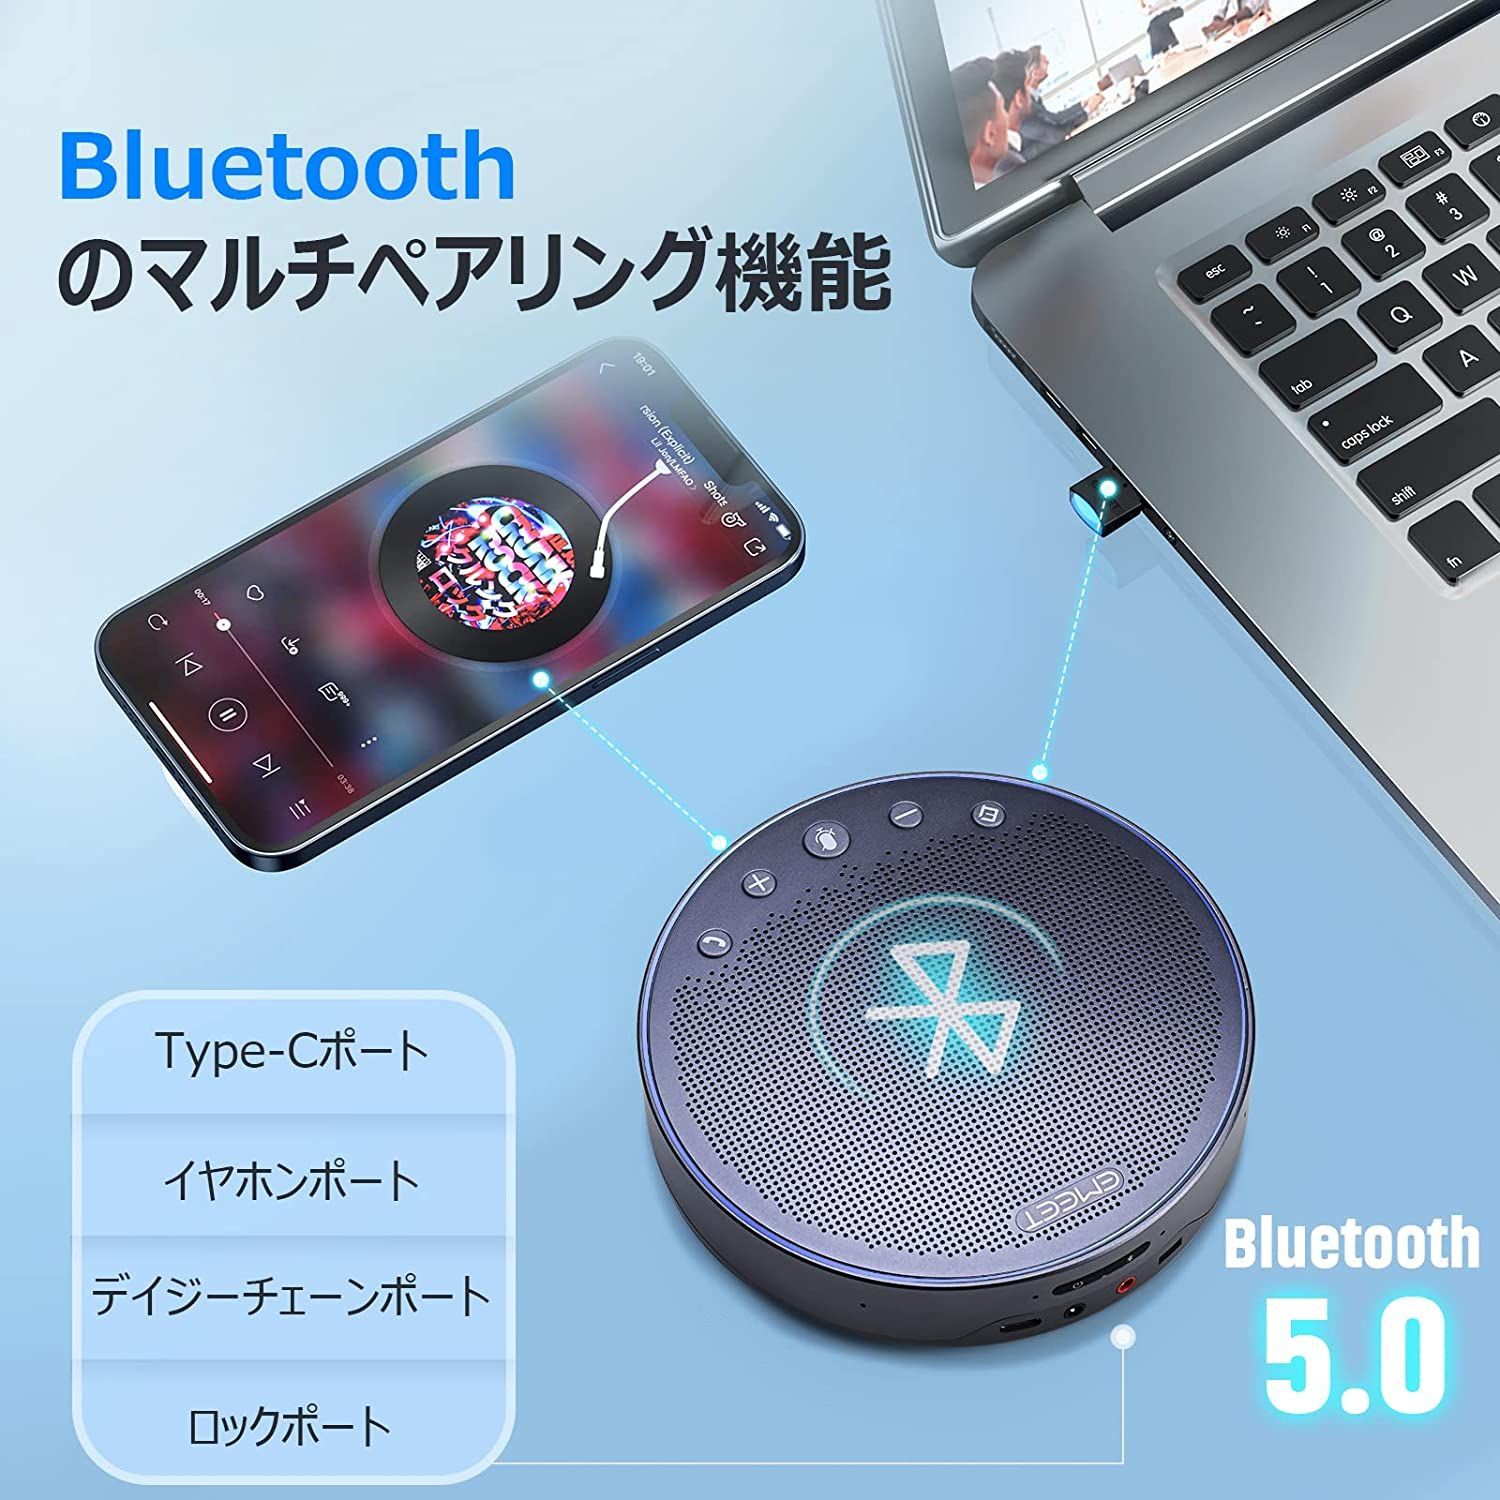 【夏セール中|日本正規販売店|2年保証|特典付き】 Emeet M3 スピーカーフォン 会議用 Bluetooth対応 マスピーカー オンライン会議 USB 全方向集音 LED指示 ノイズキャンセリング テレワーク  Bluetooth Zoom イミート-2